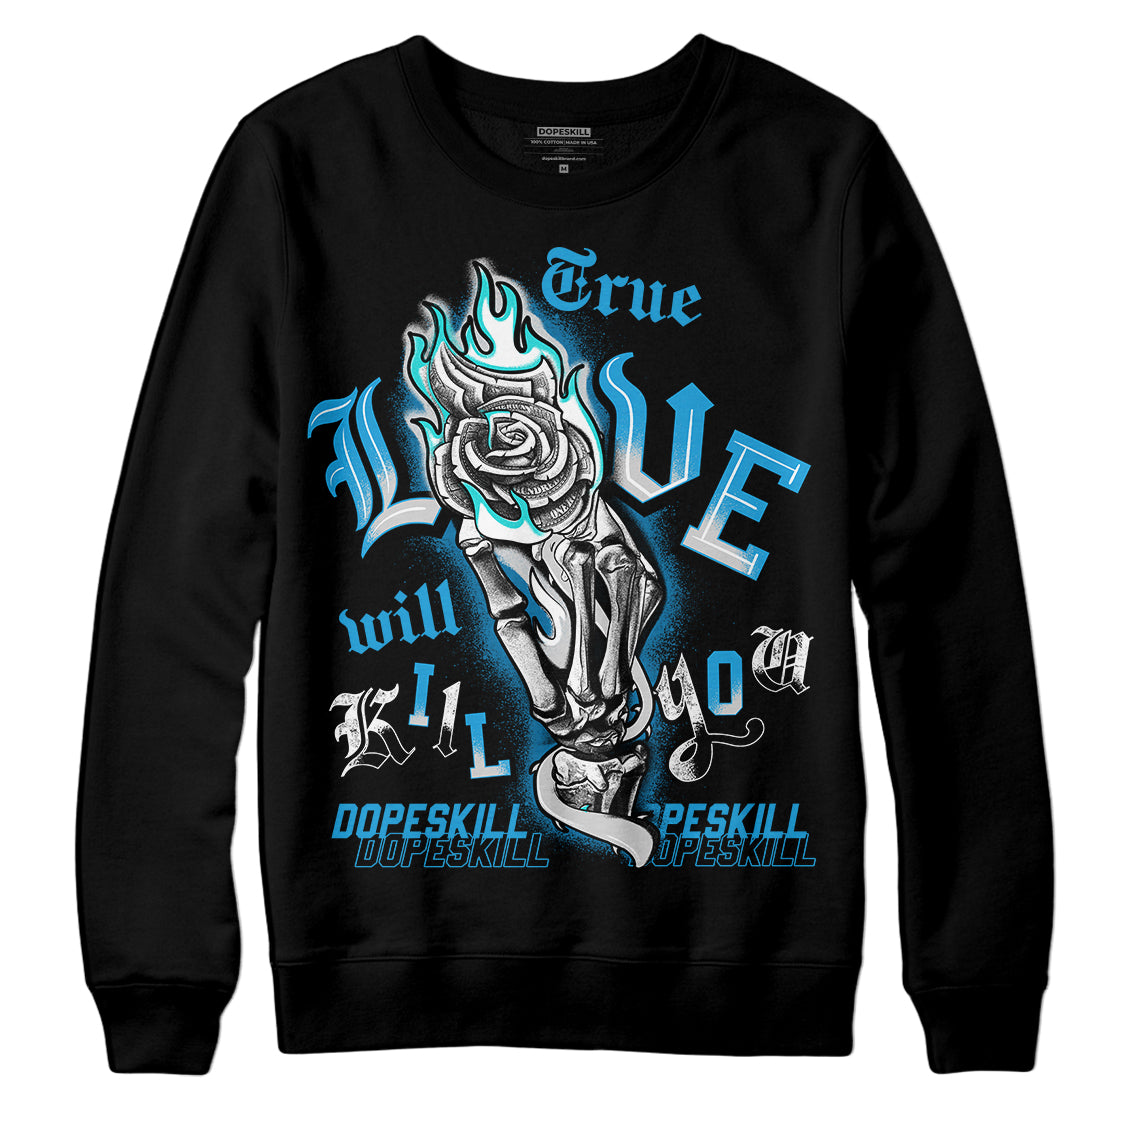 Jordan 4 Retro Military Blue DopeSkill Sweatshirt True Love Will Kill You Graphic Streetwear - Black